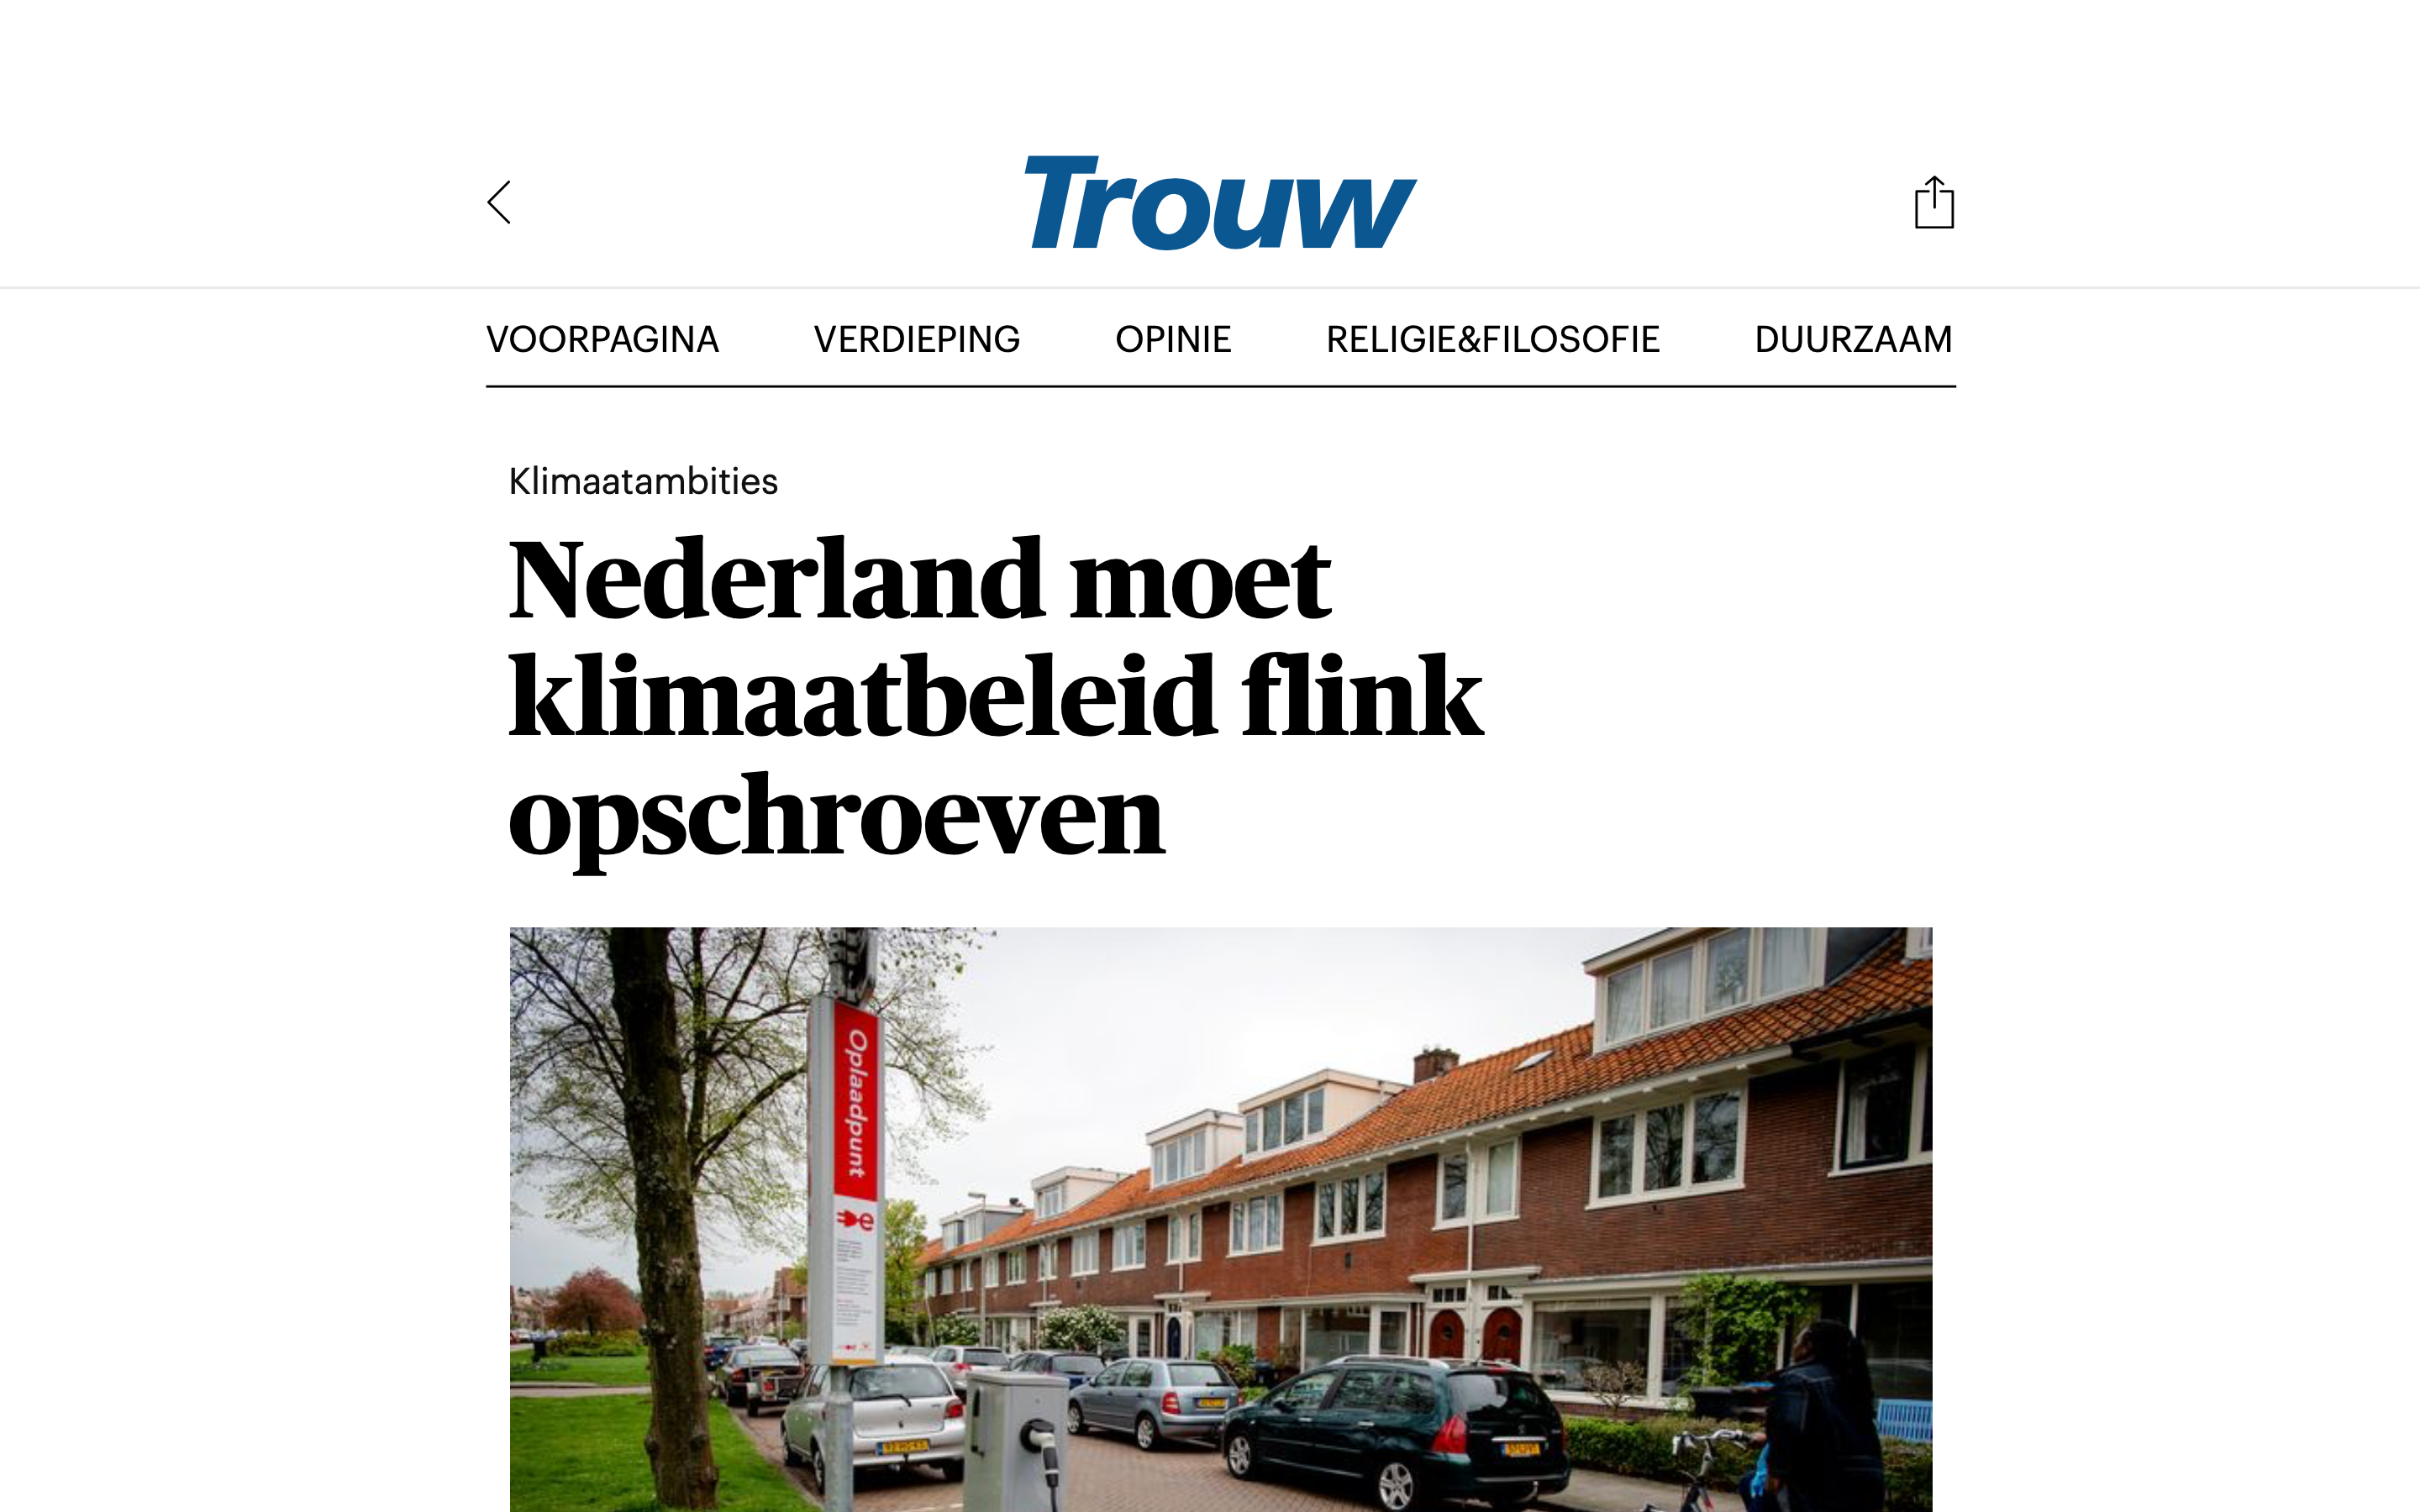 210421 Trouw - Nederland moet klimaatbeleid flink opschroeven (1)